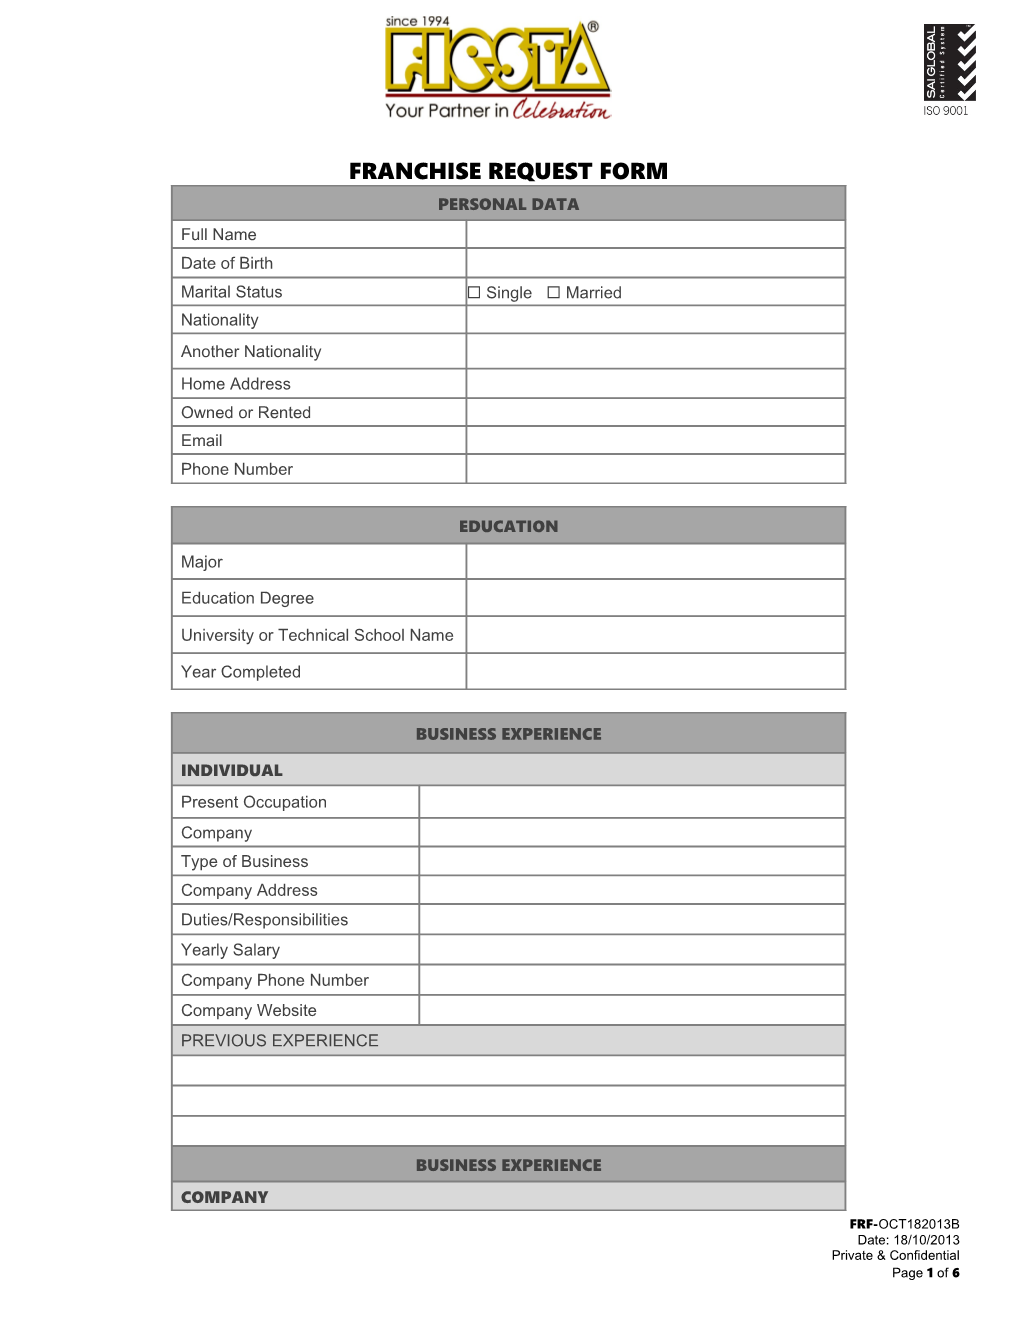 Franchise Request Form